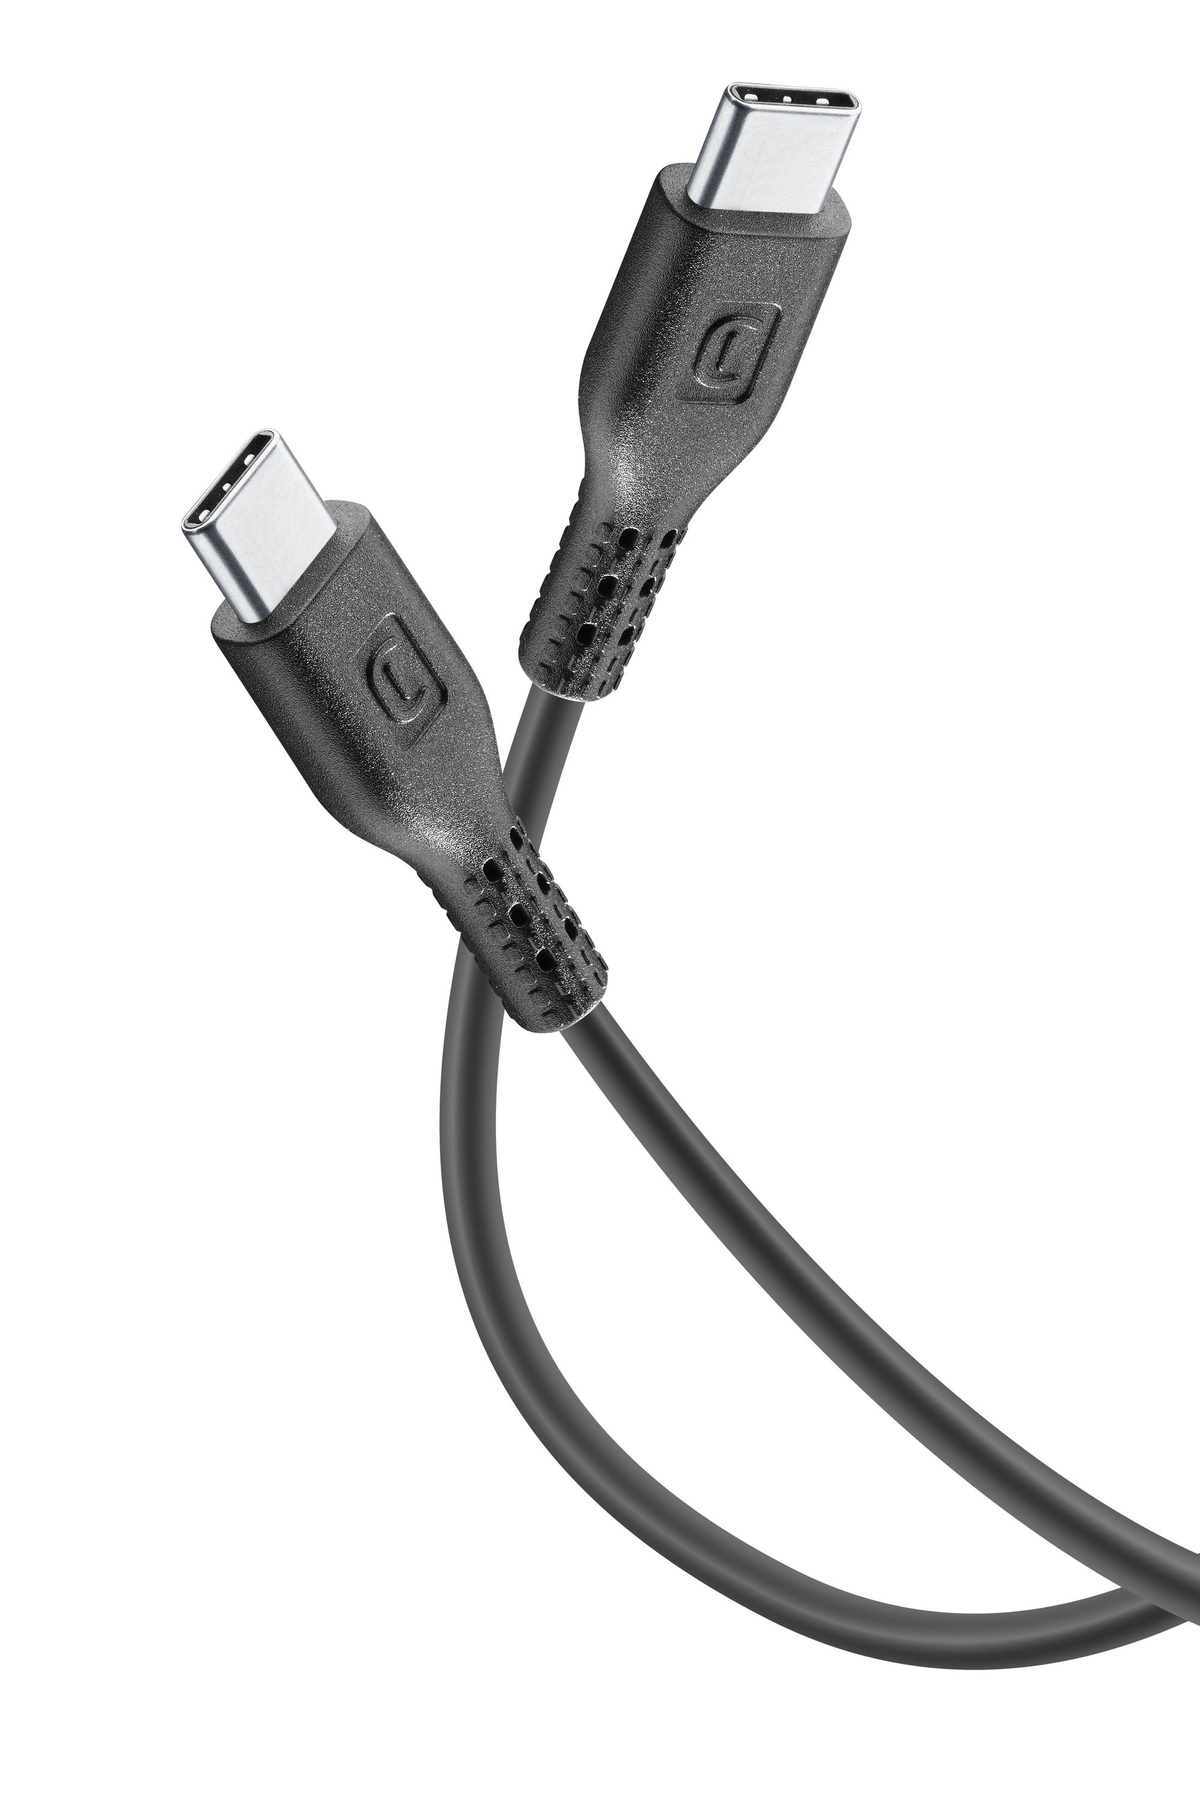 Ladekabel, USBDATAC2C5A1MK, cm, LINE 120 CELLULAR Weiß